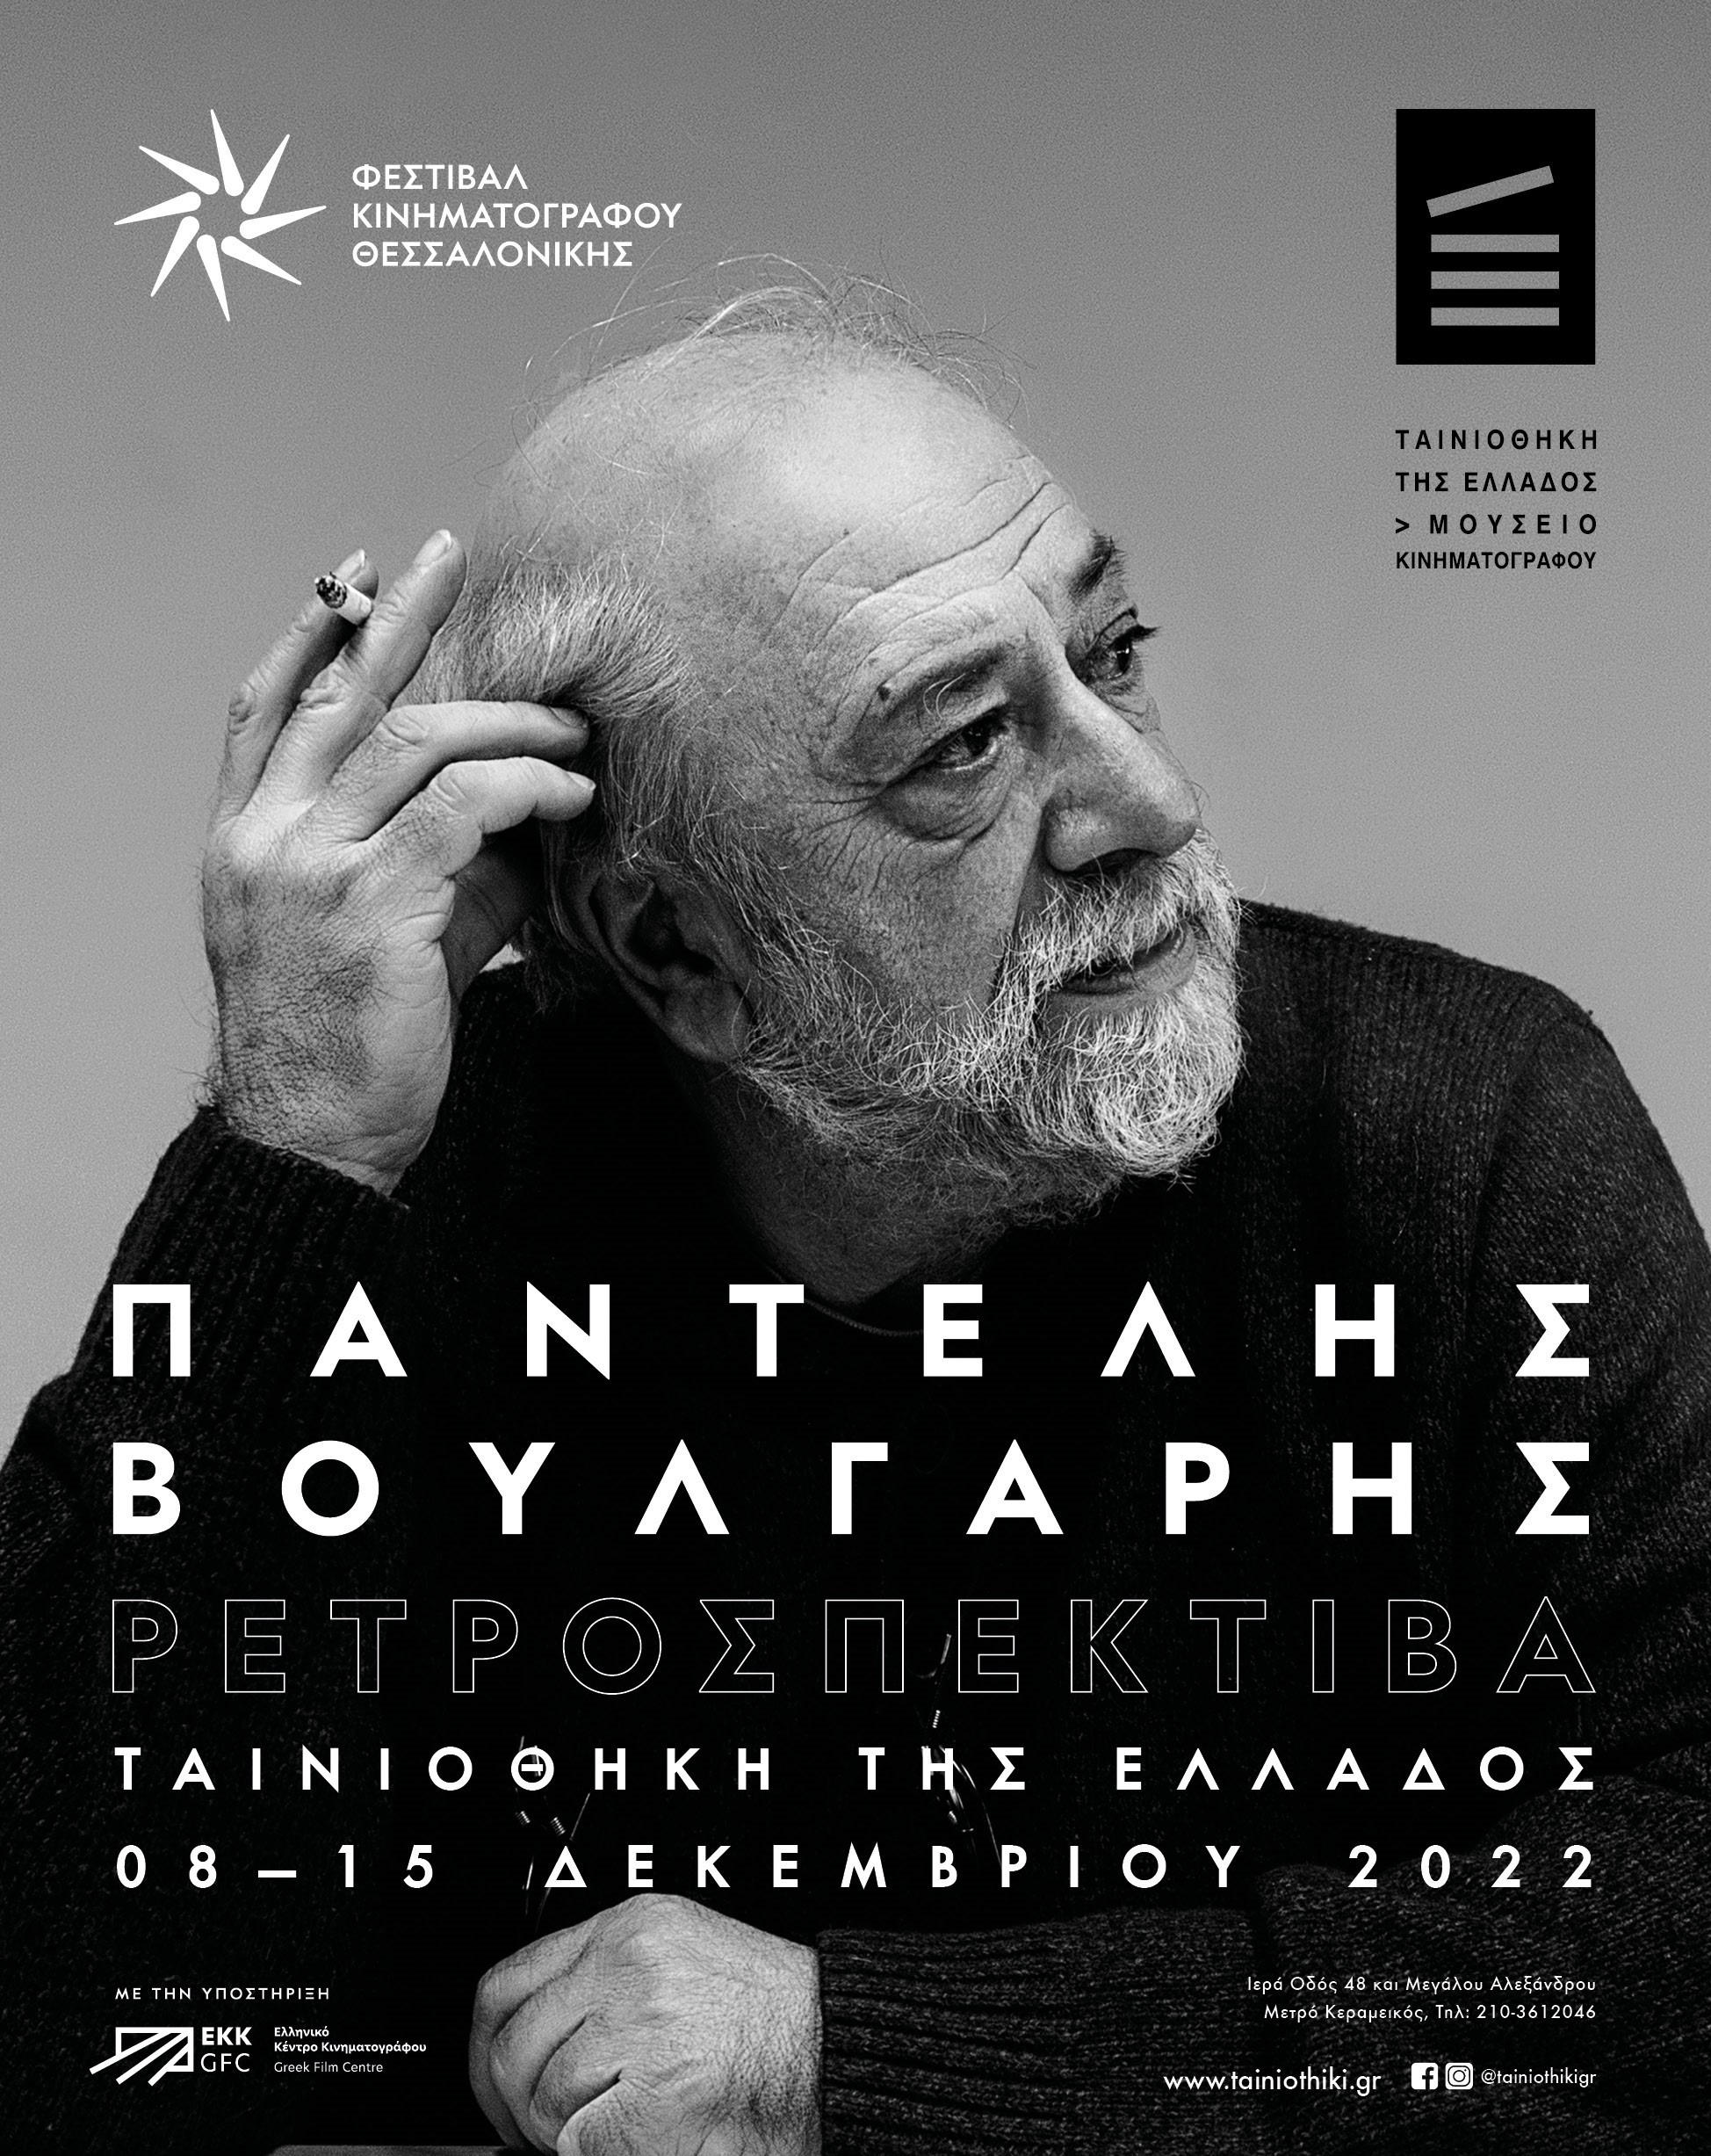 Παντελής Βούλγαρης: Ρετροσπεκτίβα των ταινιών του εμβληματικού δημιουργό στην Ταινιοθήκη της Ελλάδος